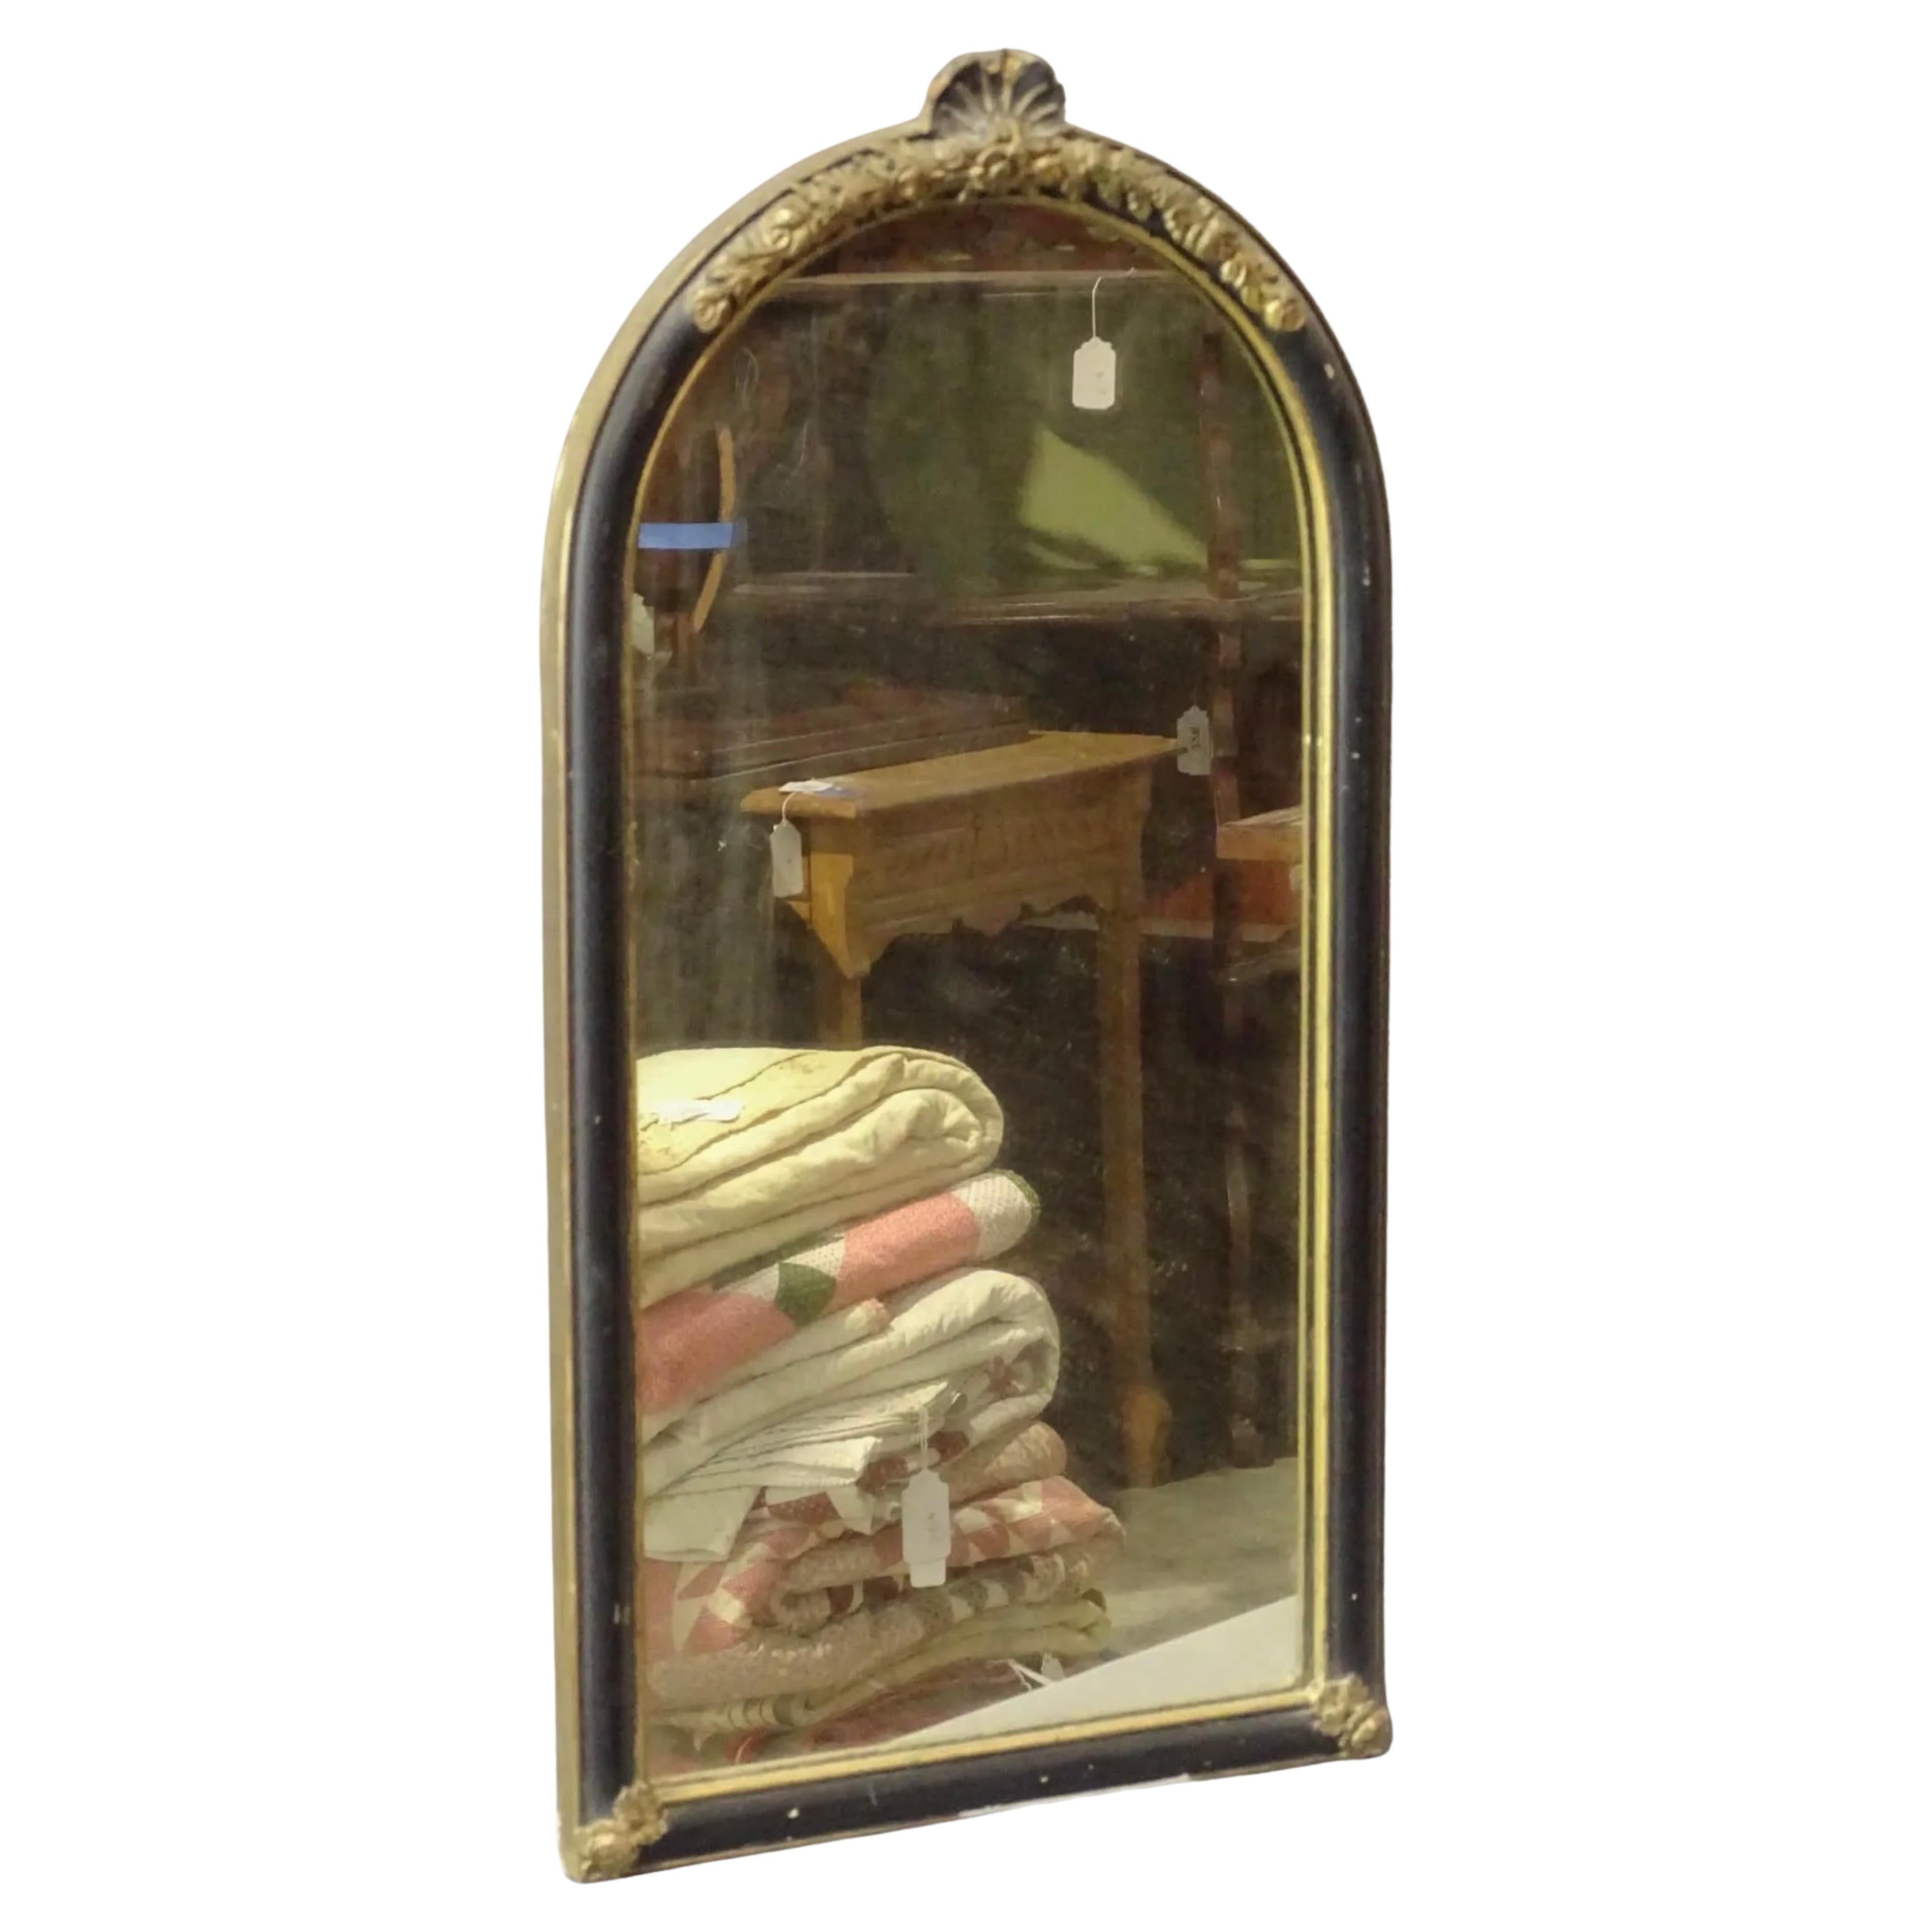 Un petit miroir continental de style Queen Anne avec un cadre ébénisé, une décoration de coquille dorée sur le dessus ovale et un accent de bordure dorée qui entoure le cadre.
Ce miroir de petite taille se prête bien à un miroir de salle d'eau, de